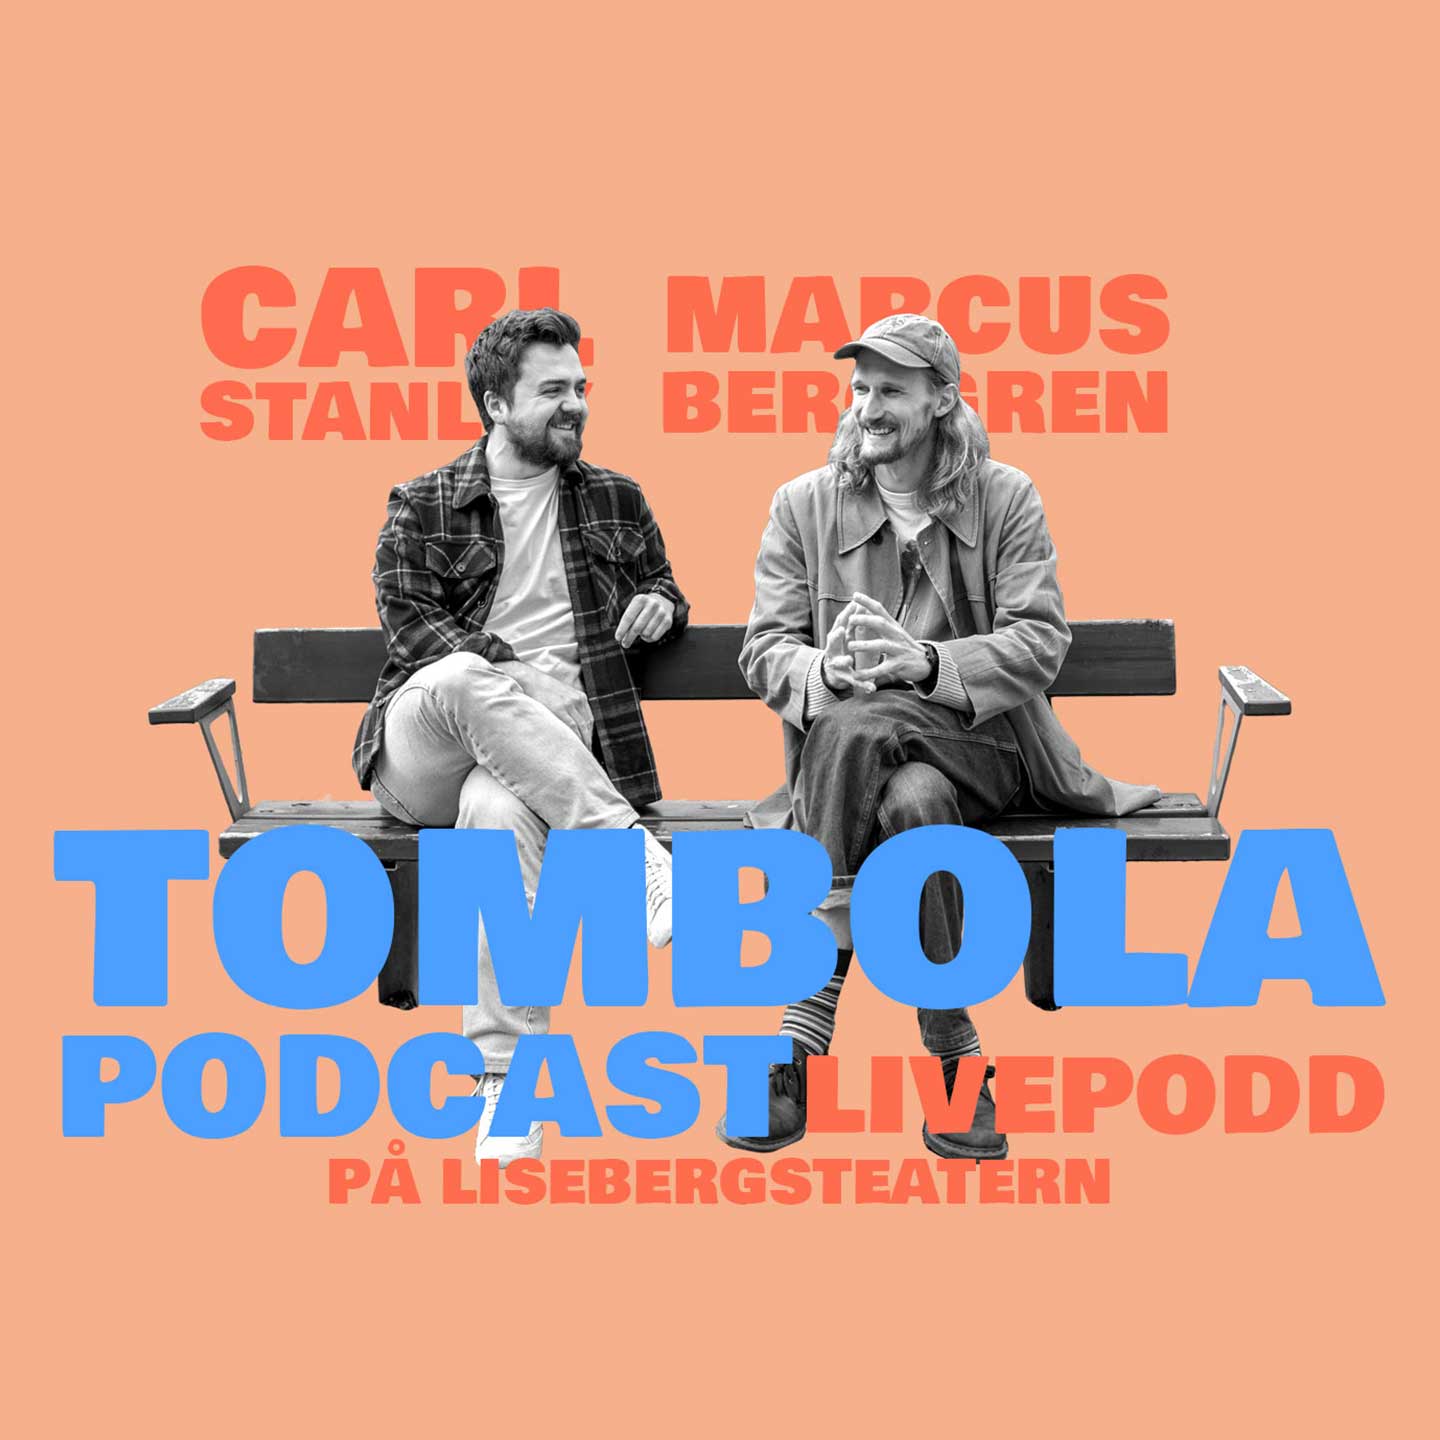 Tombola Podcast livepodd